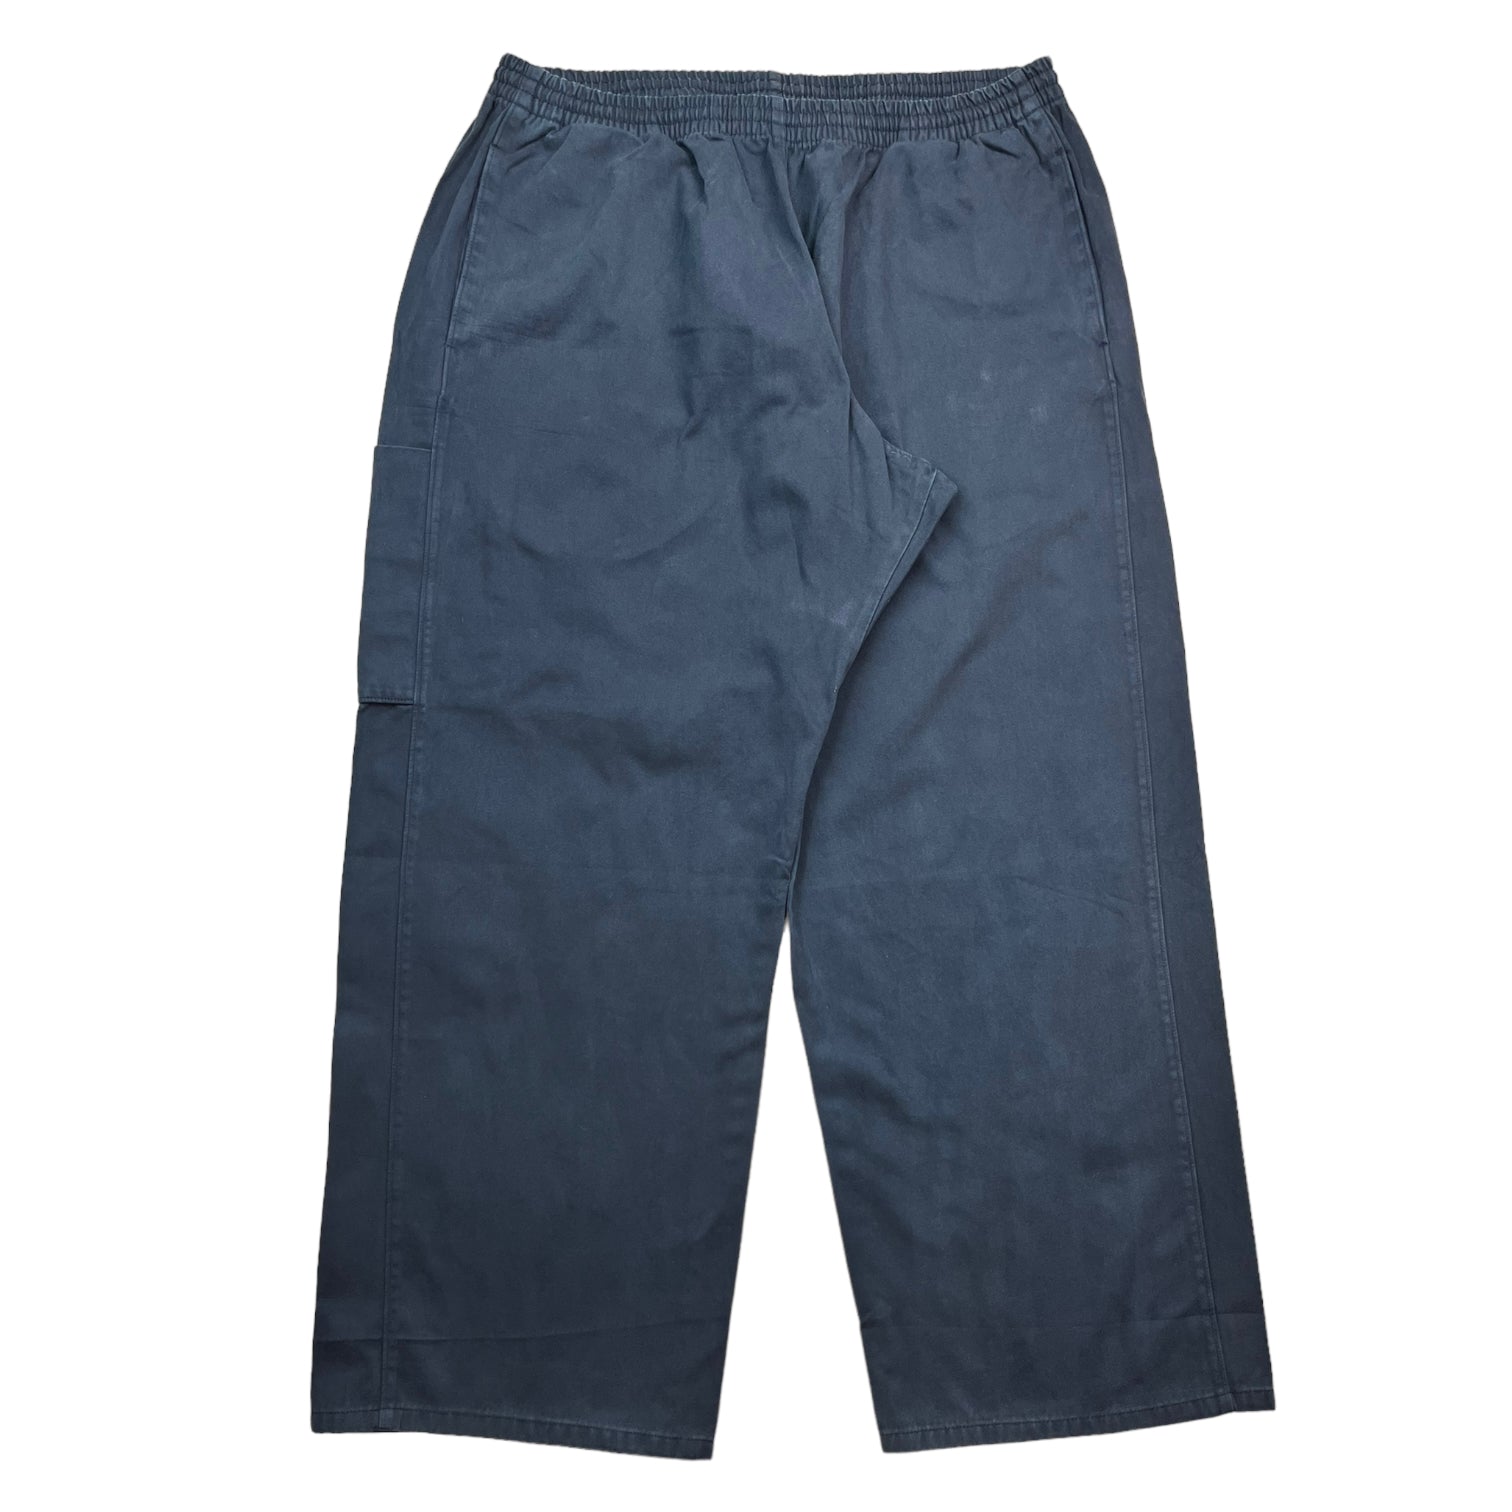 Yeezy x Gap Navy Unreleased Sateen Cargo Pants - Blue Cargo Pants